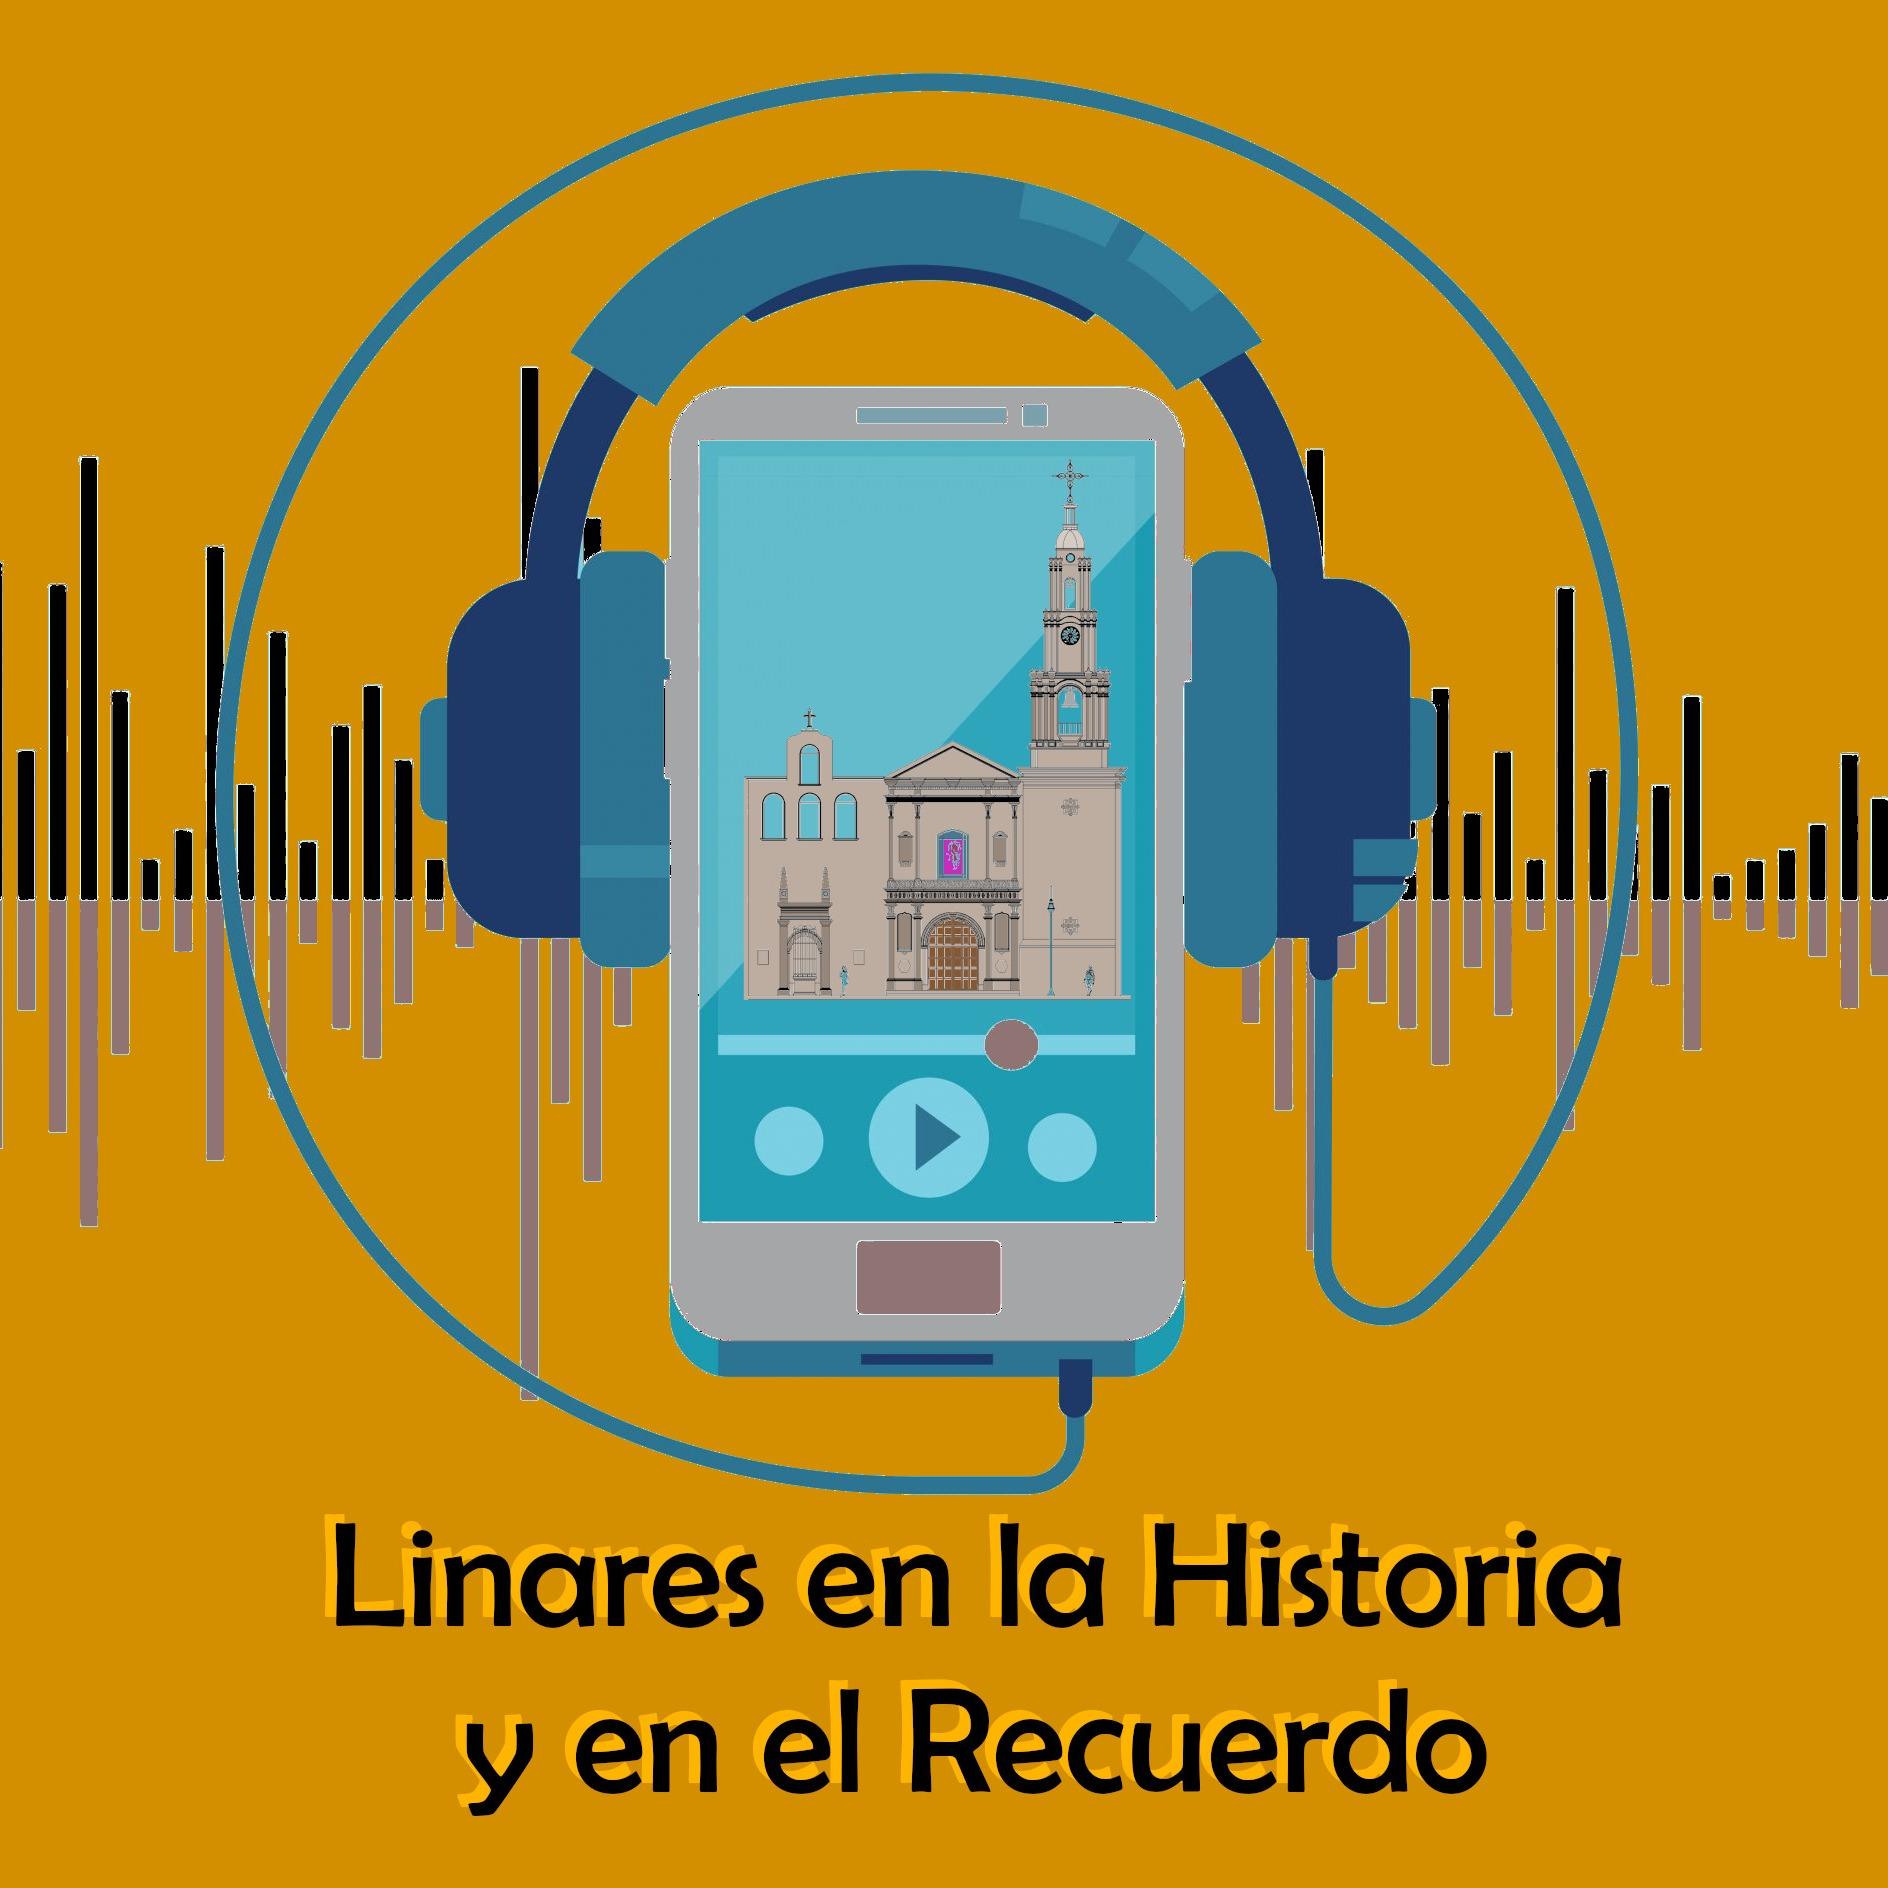 Linares en la Historia y en el Recuerdo